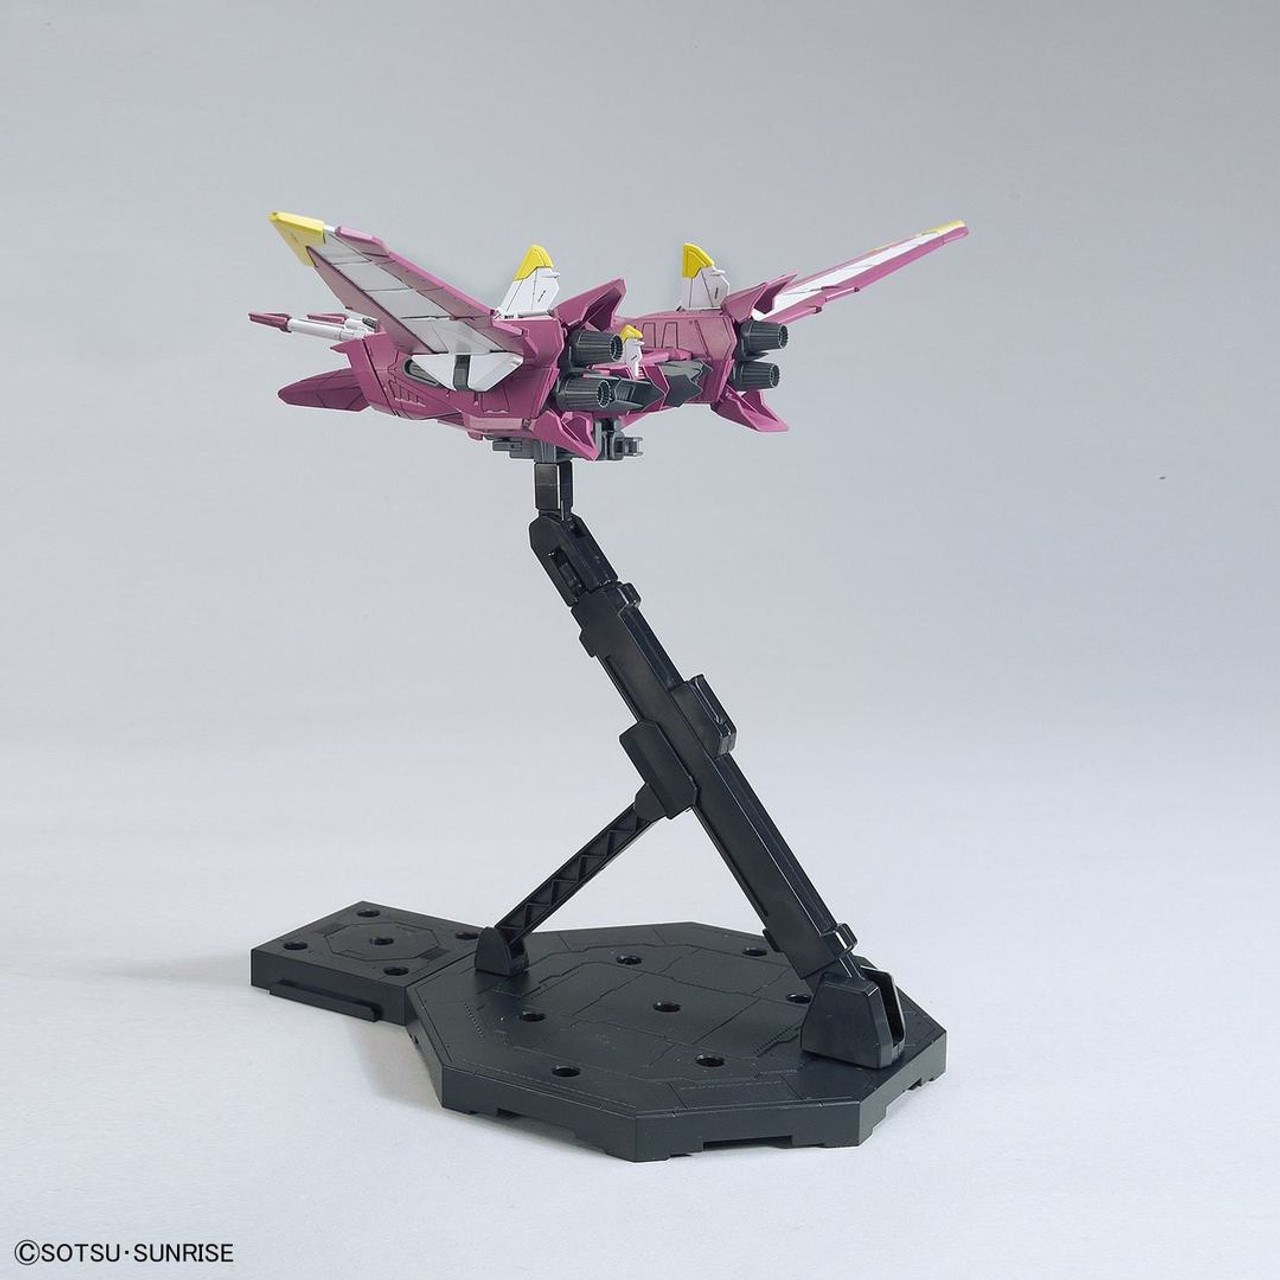 BAN2374530 Bandai MG Justice Gundam 'Gundam SEED'